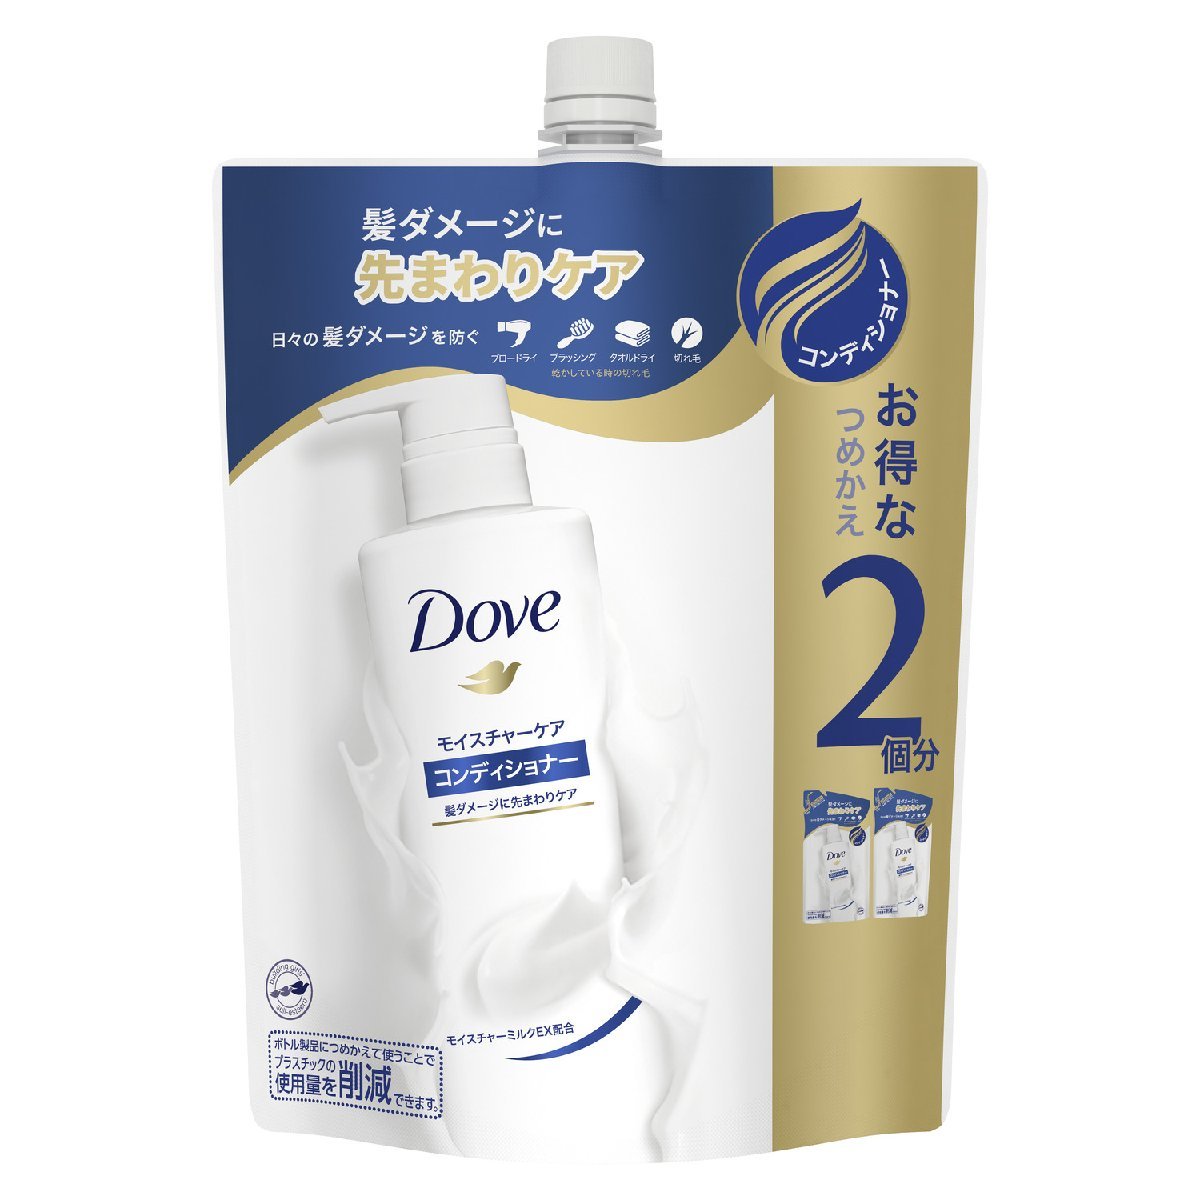 Резюме DAV DAV WREYY CANDER для Natsume 700G Unilever Conditioner Prinse X [3] /H